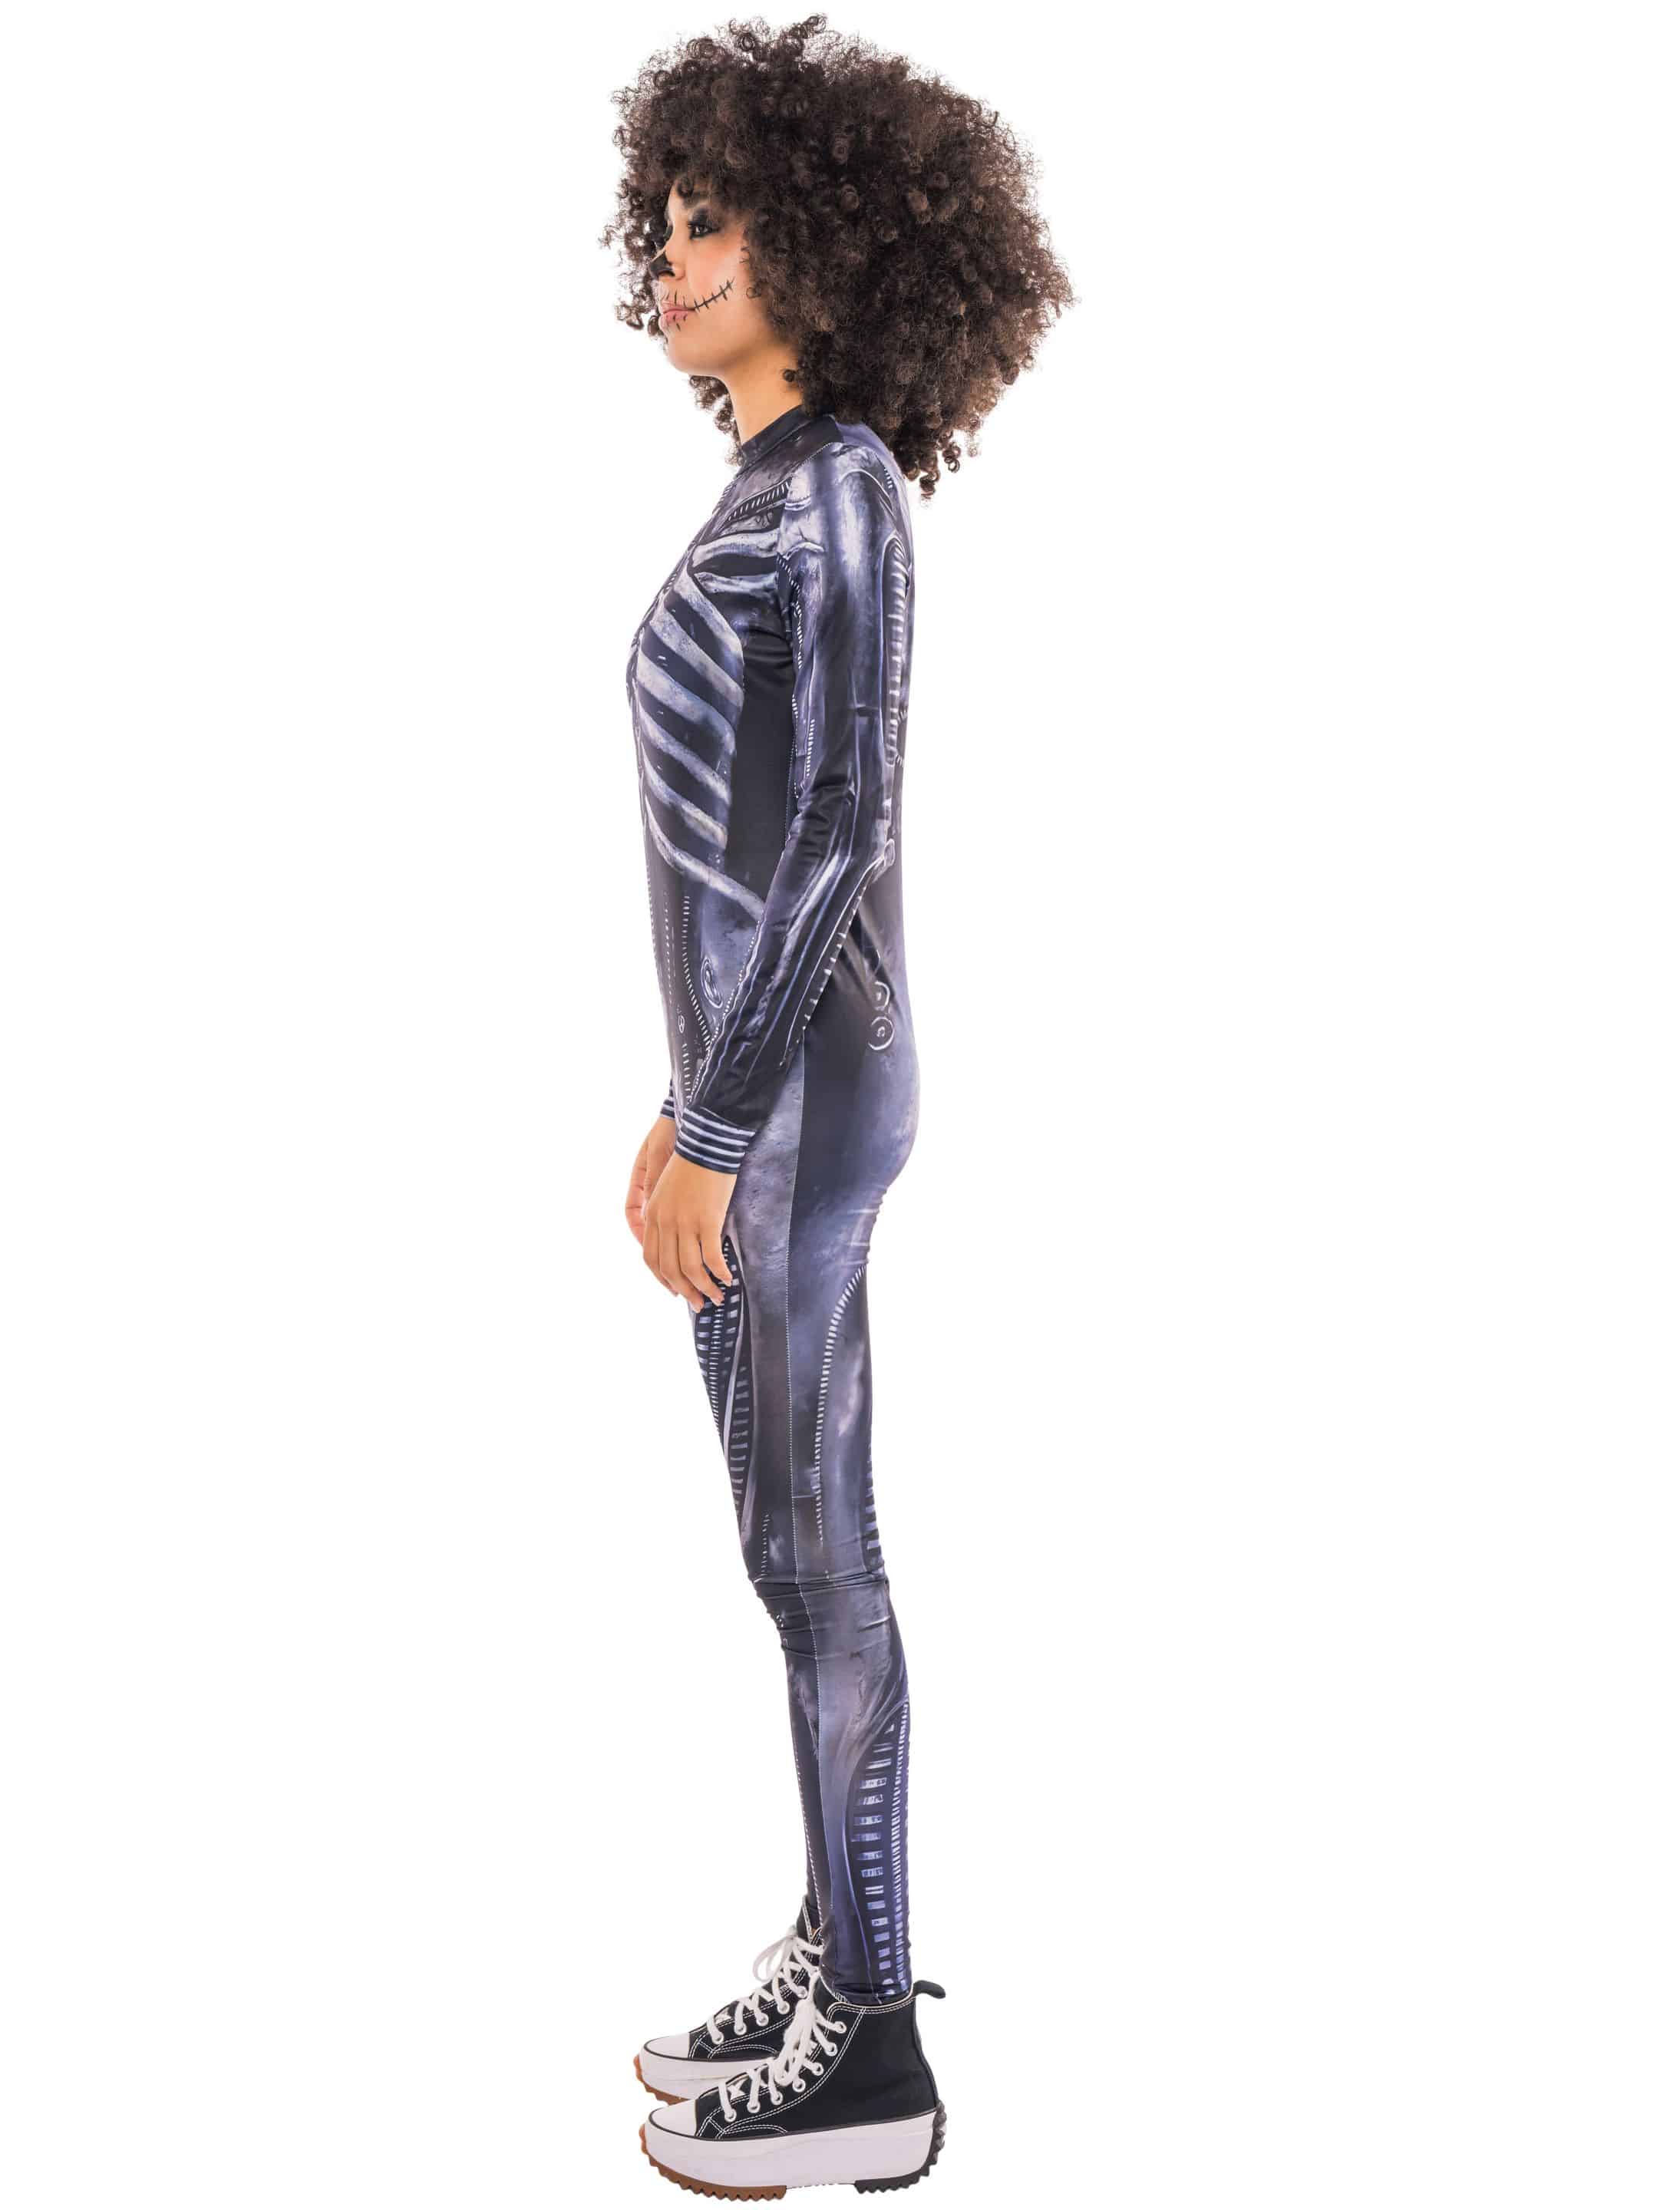 Jumpsuit Skelett Damen schwarz/weiß L/XL